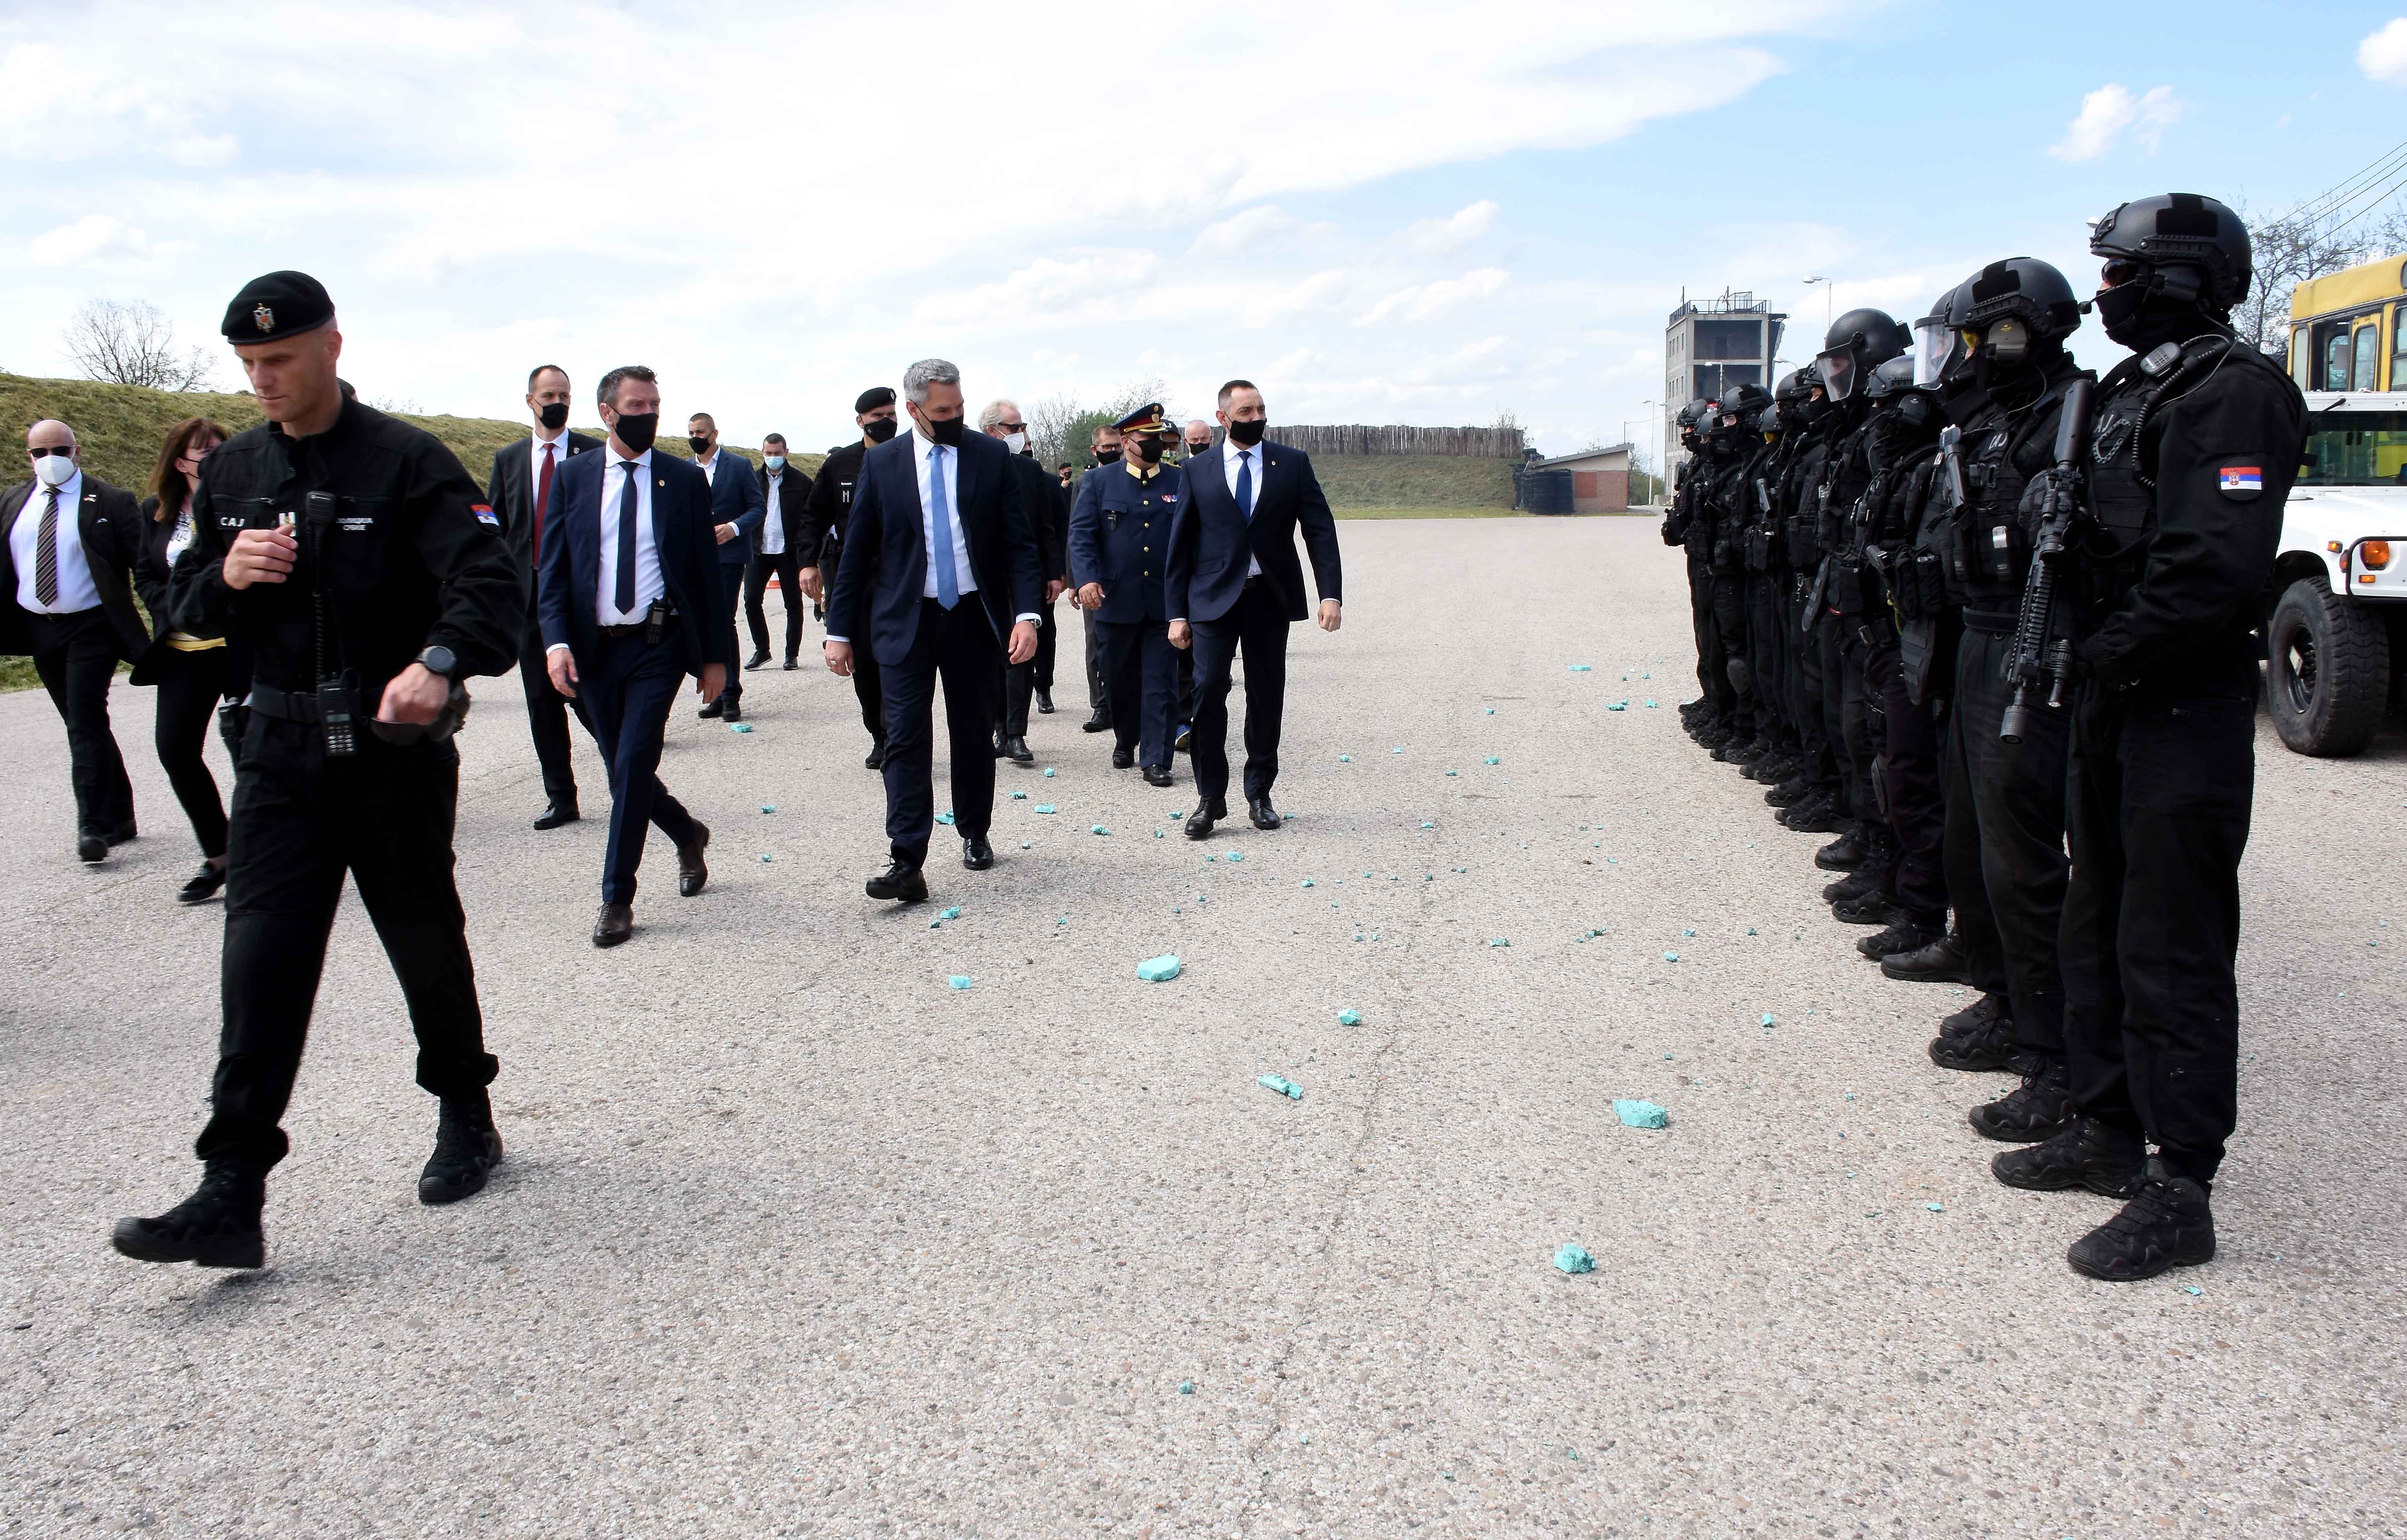 Ministri Vulin i Nehamer obišli su danas bazu Specijalne antiterorističke jedinice